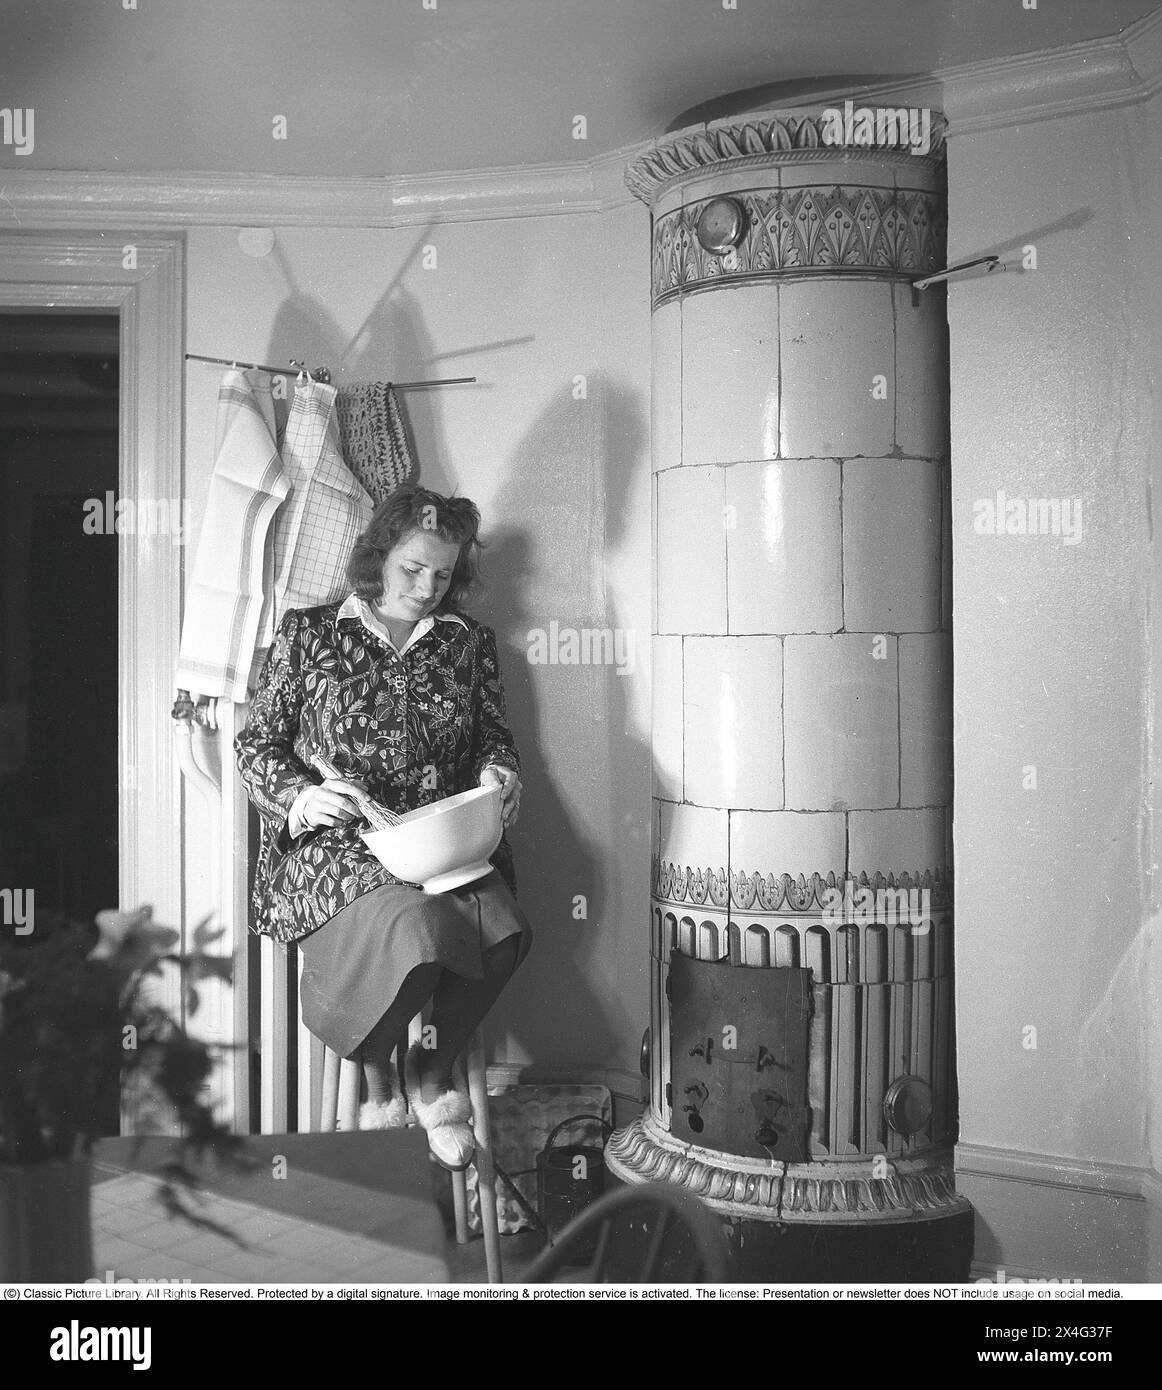 Negli anni '1940 Interno di una stanza e una giovane donna con una ciotola in ginocchio che ne frusta il contenuto. È seduta accanto a una stufa piastrellata, una fonte di riscaldamento a legna che era comune nelle case in passato. Il calore è stato immagazzinato a lungo nella grande massa della stufa. Svezia 1946 Kristoffersson rif. N138-3 Foto Stock